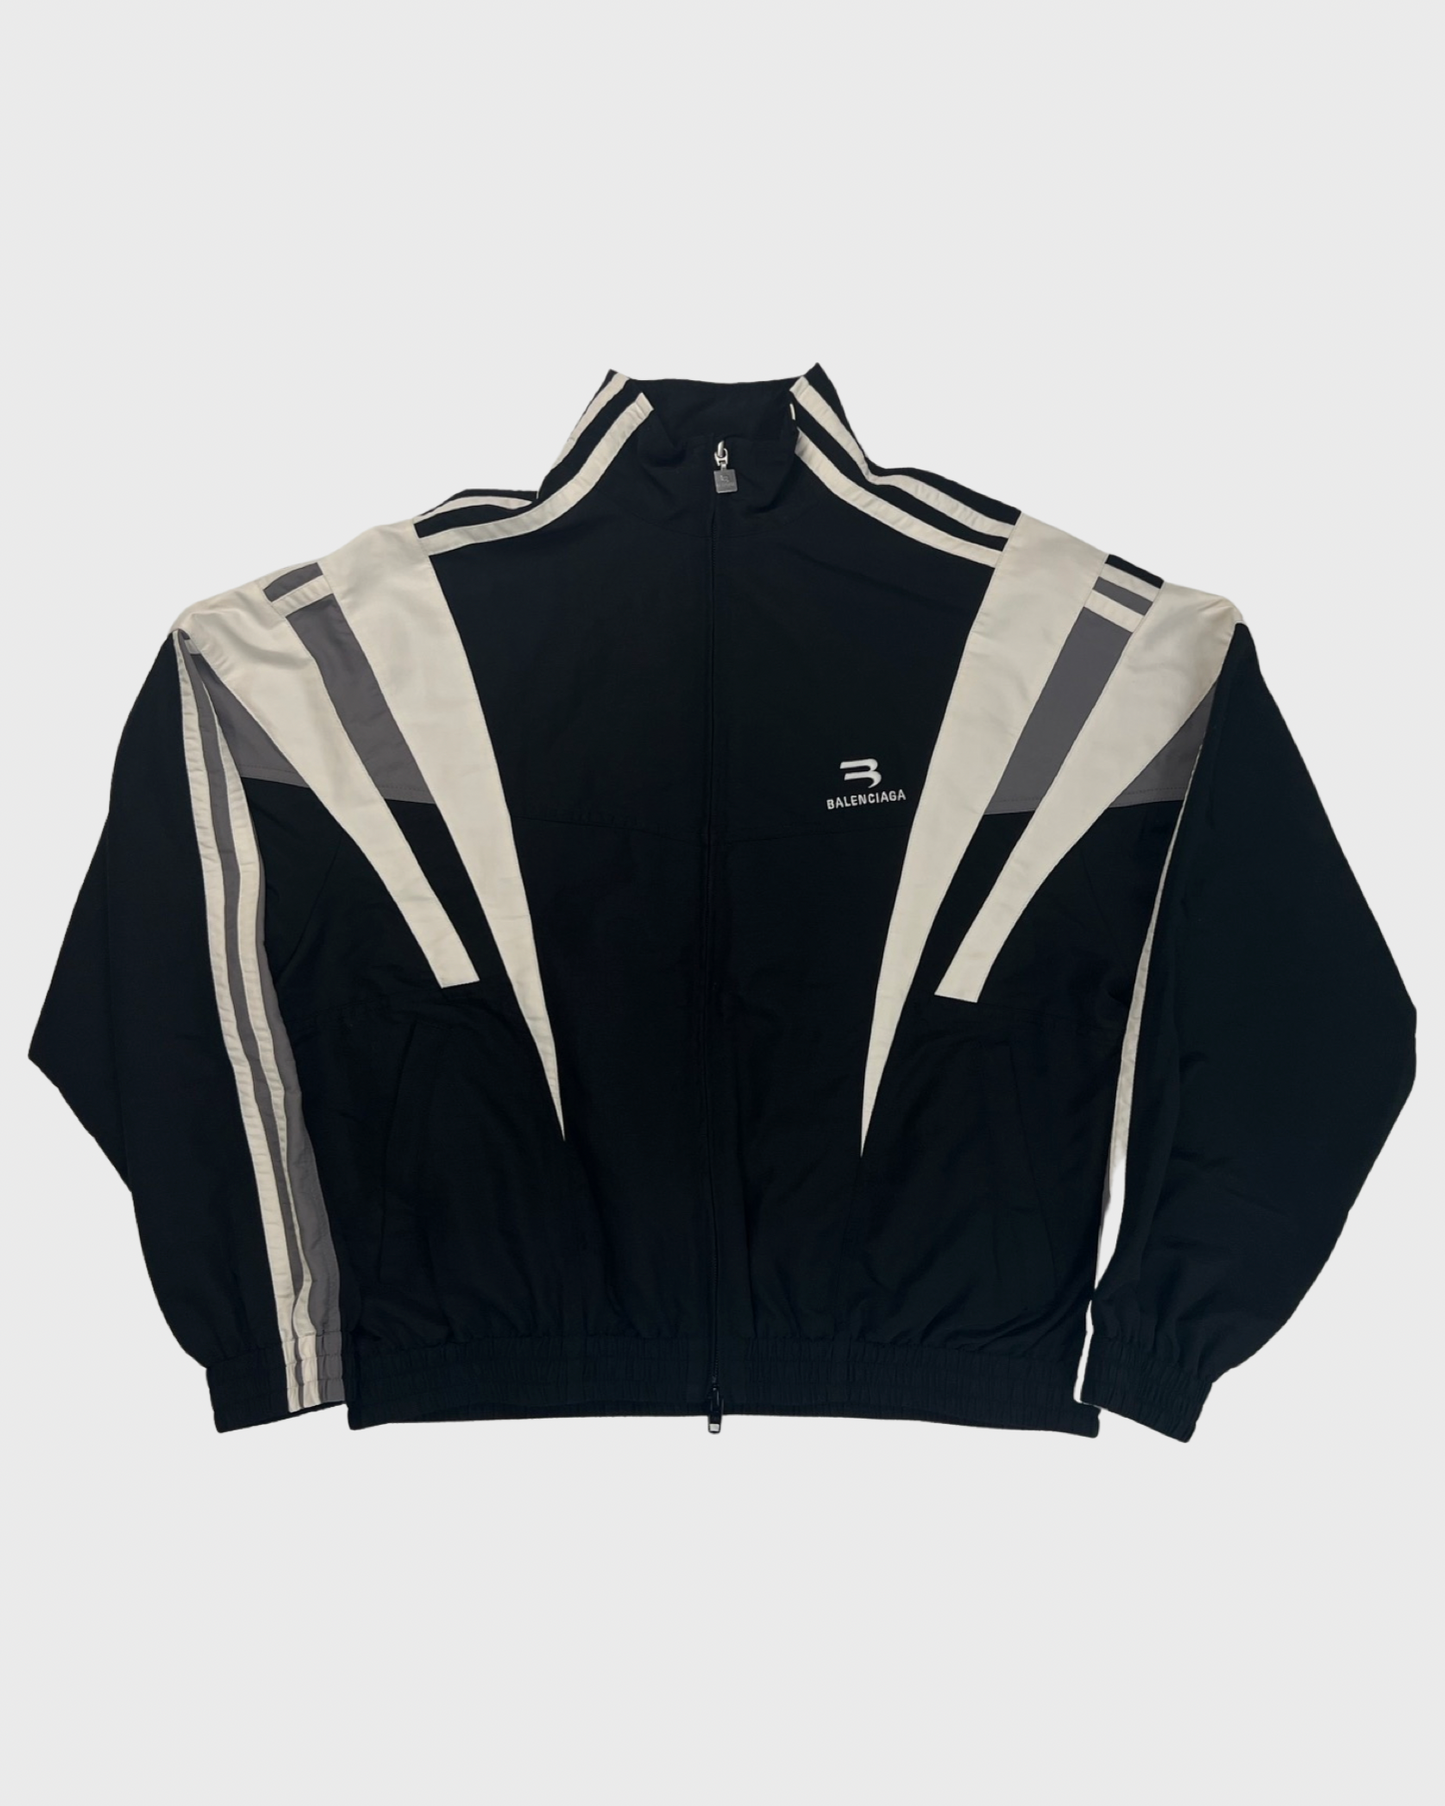 Balenciaga jacket sporty B trackjacket SZ:M